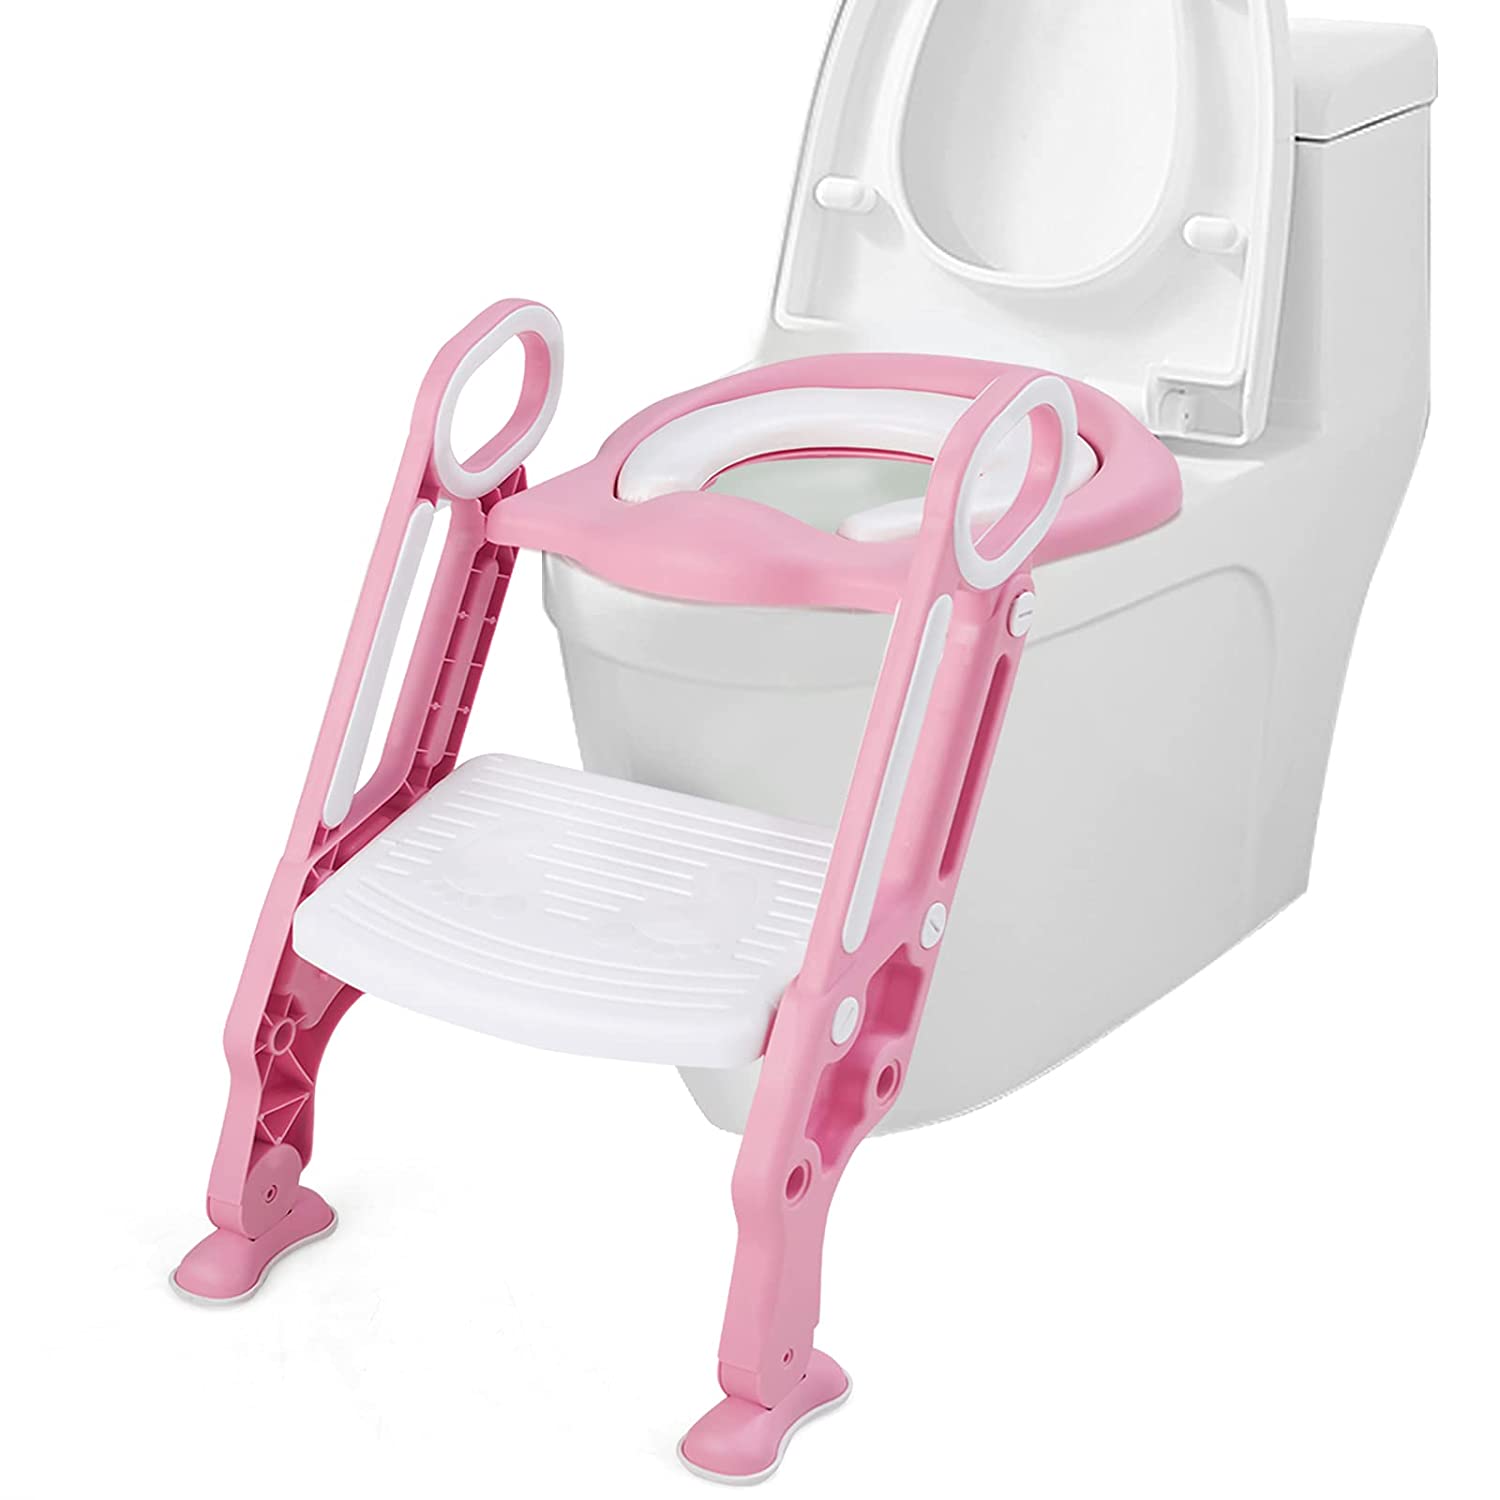 Kinder Toilettensitz höhenverstellbar home24 | kaufen